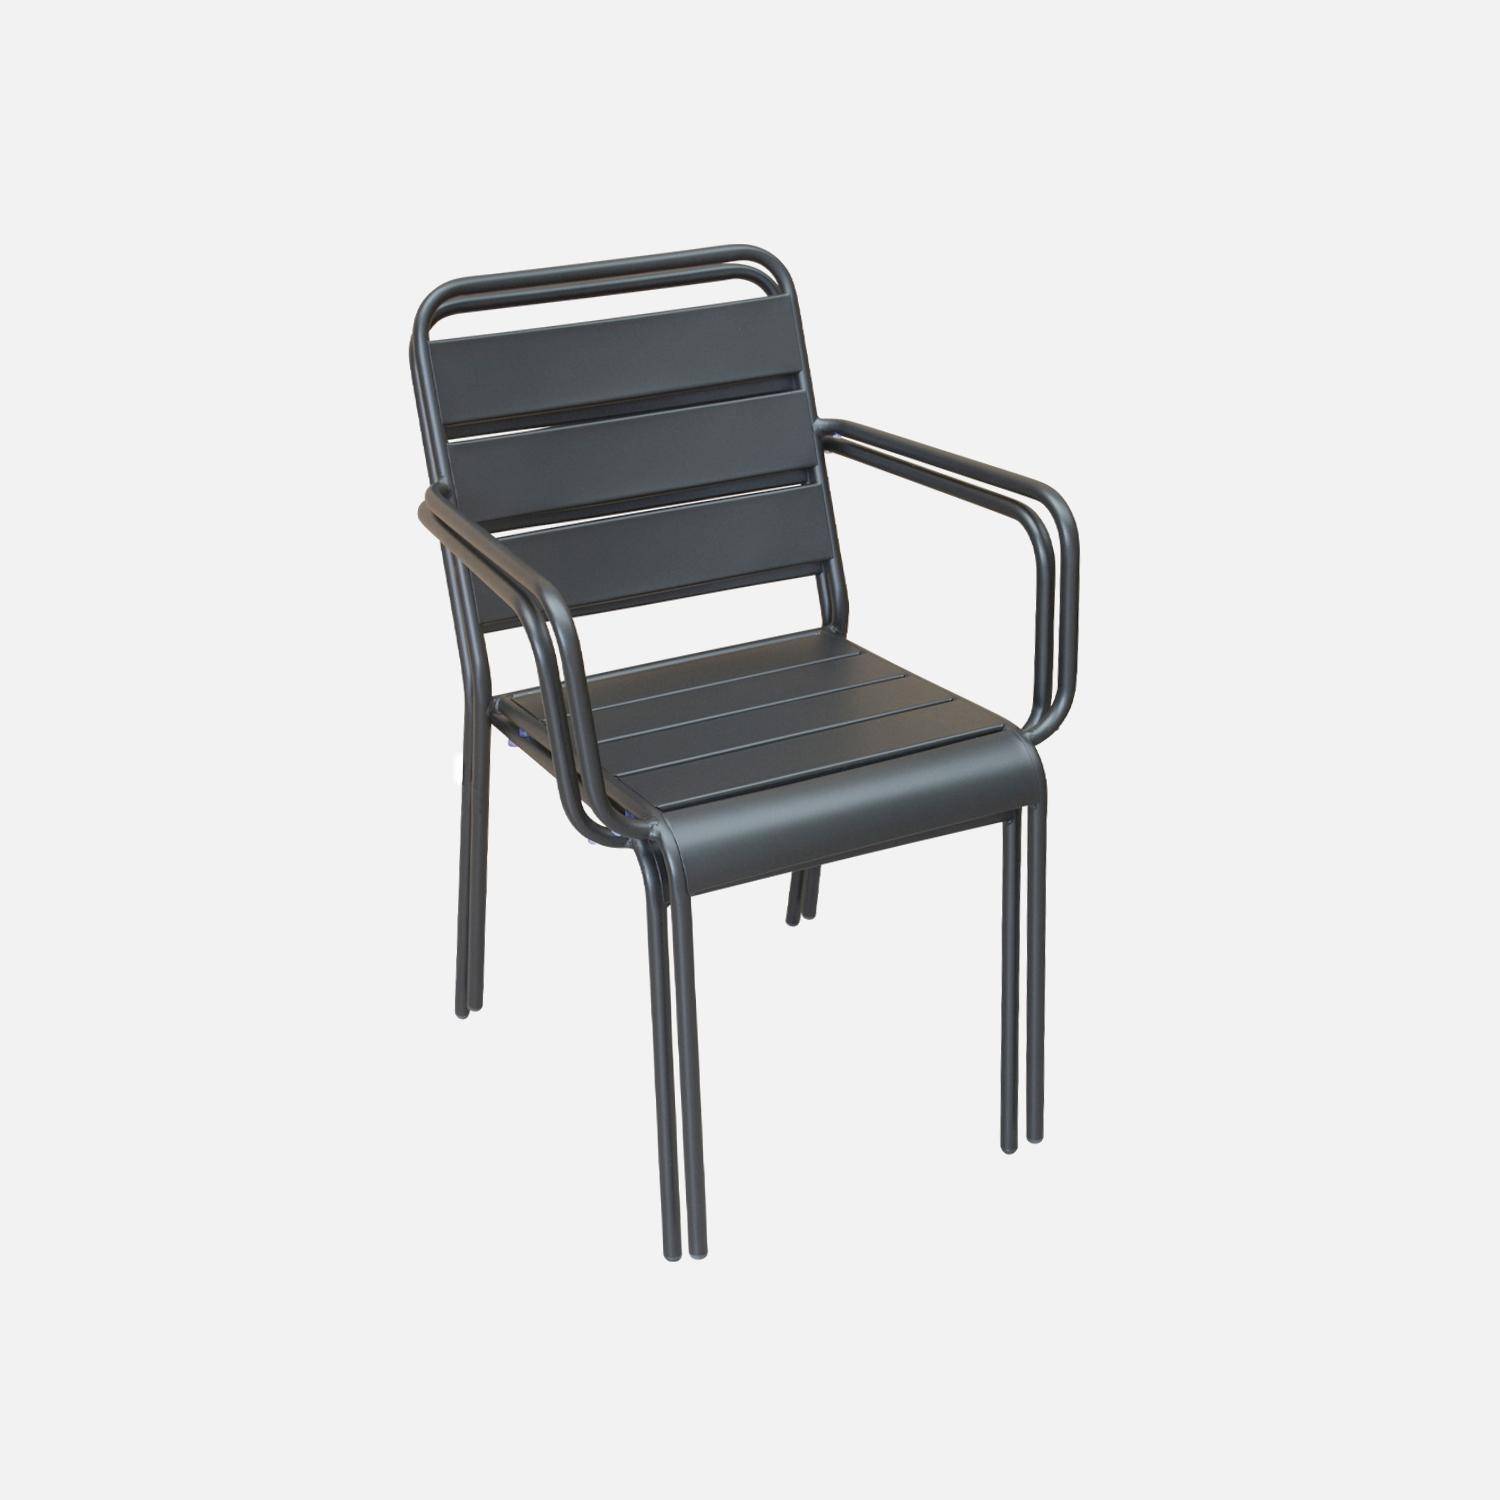 Lot de 2 fauteuils intérieur / extérieur en métal peinture antirouille empilables coloris gris,sweeek,Photo3